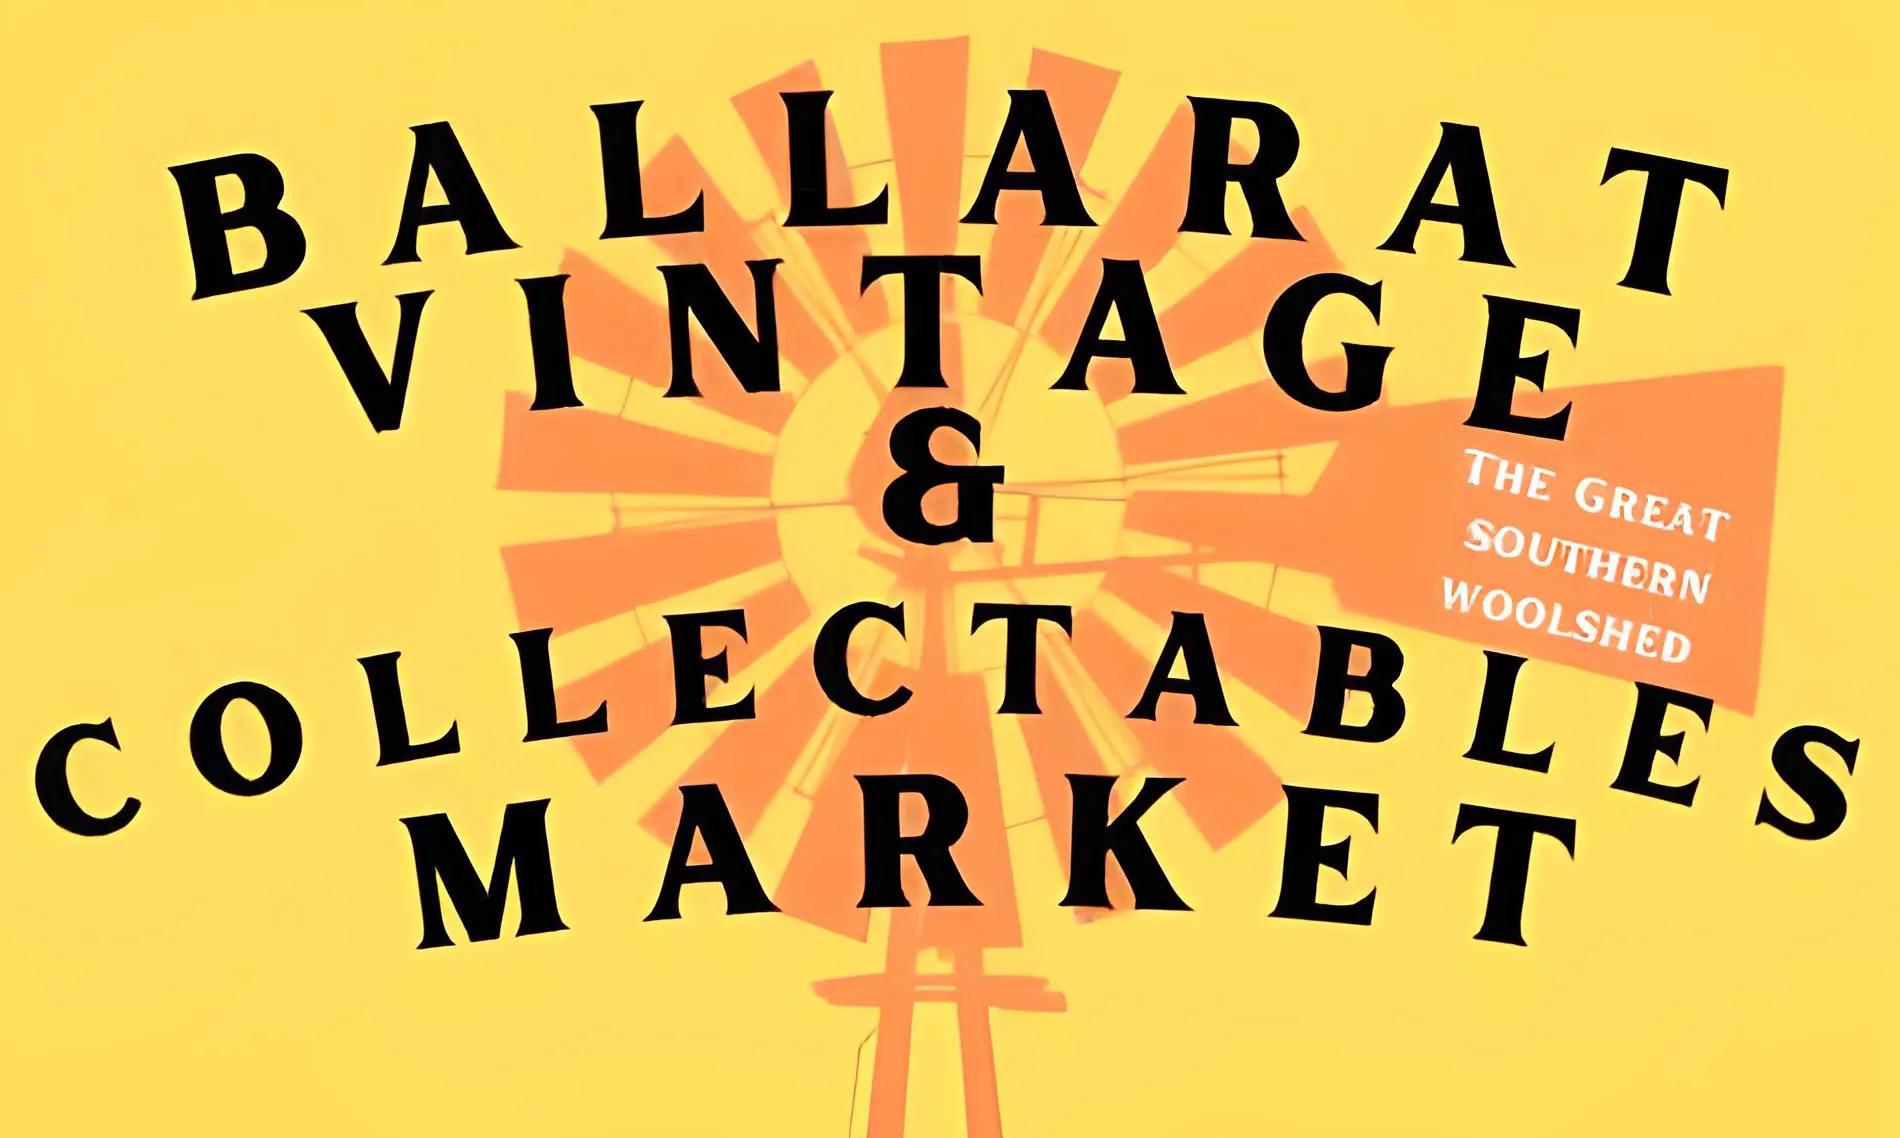 Ballarat Vintage & Collectables Market: Seven-Day Markets in Ballart